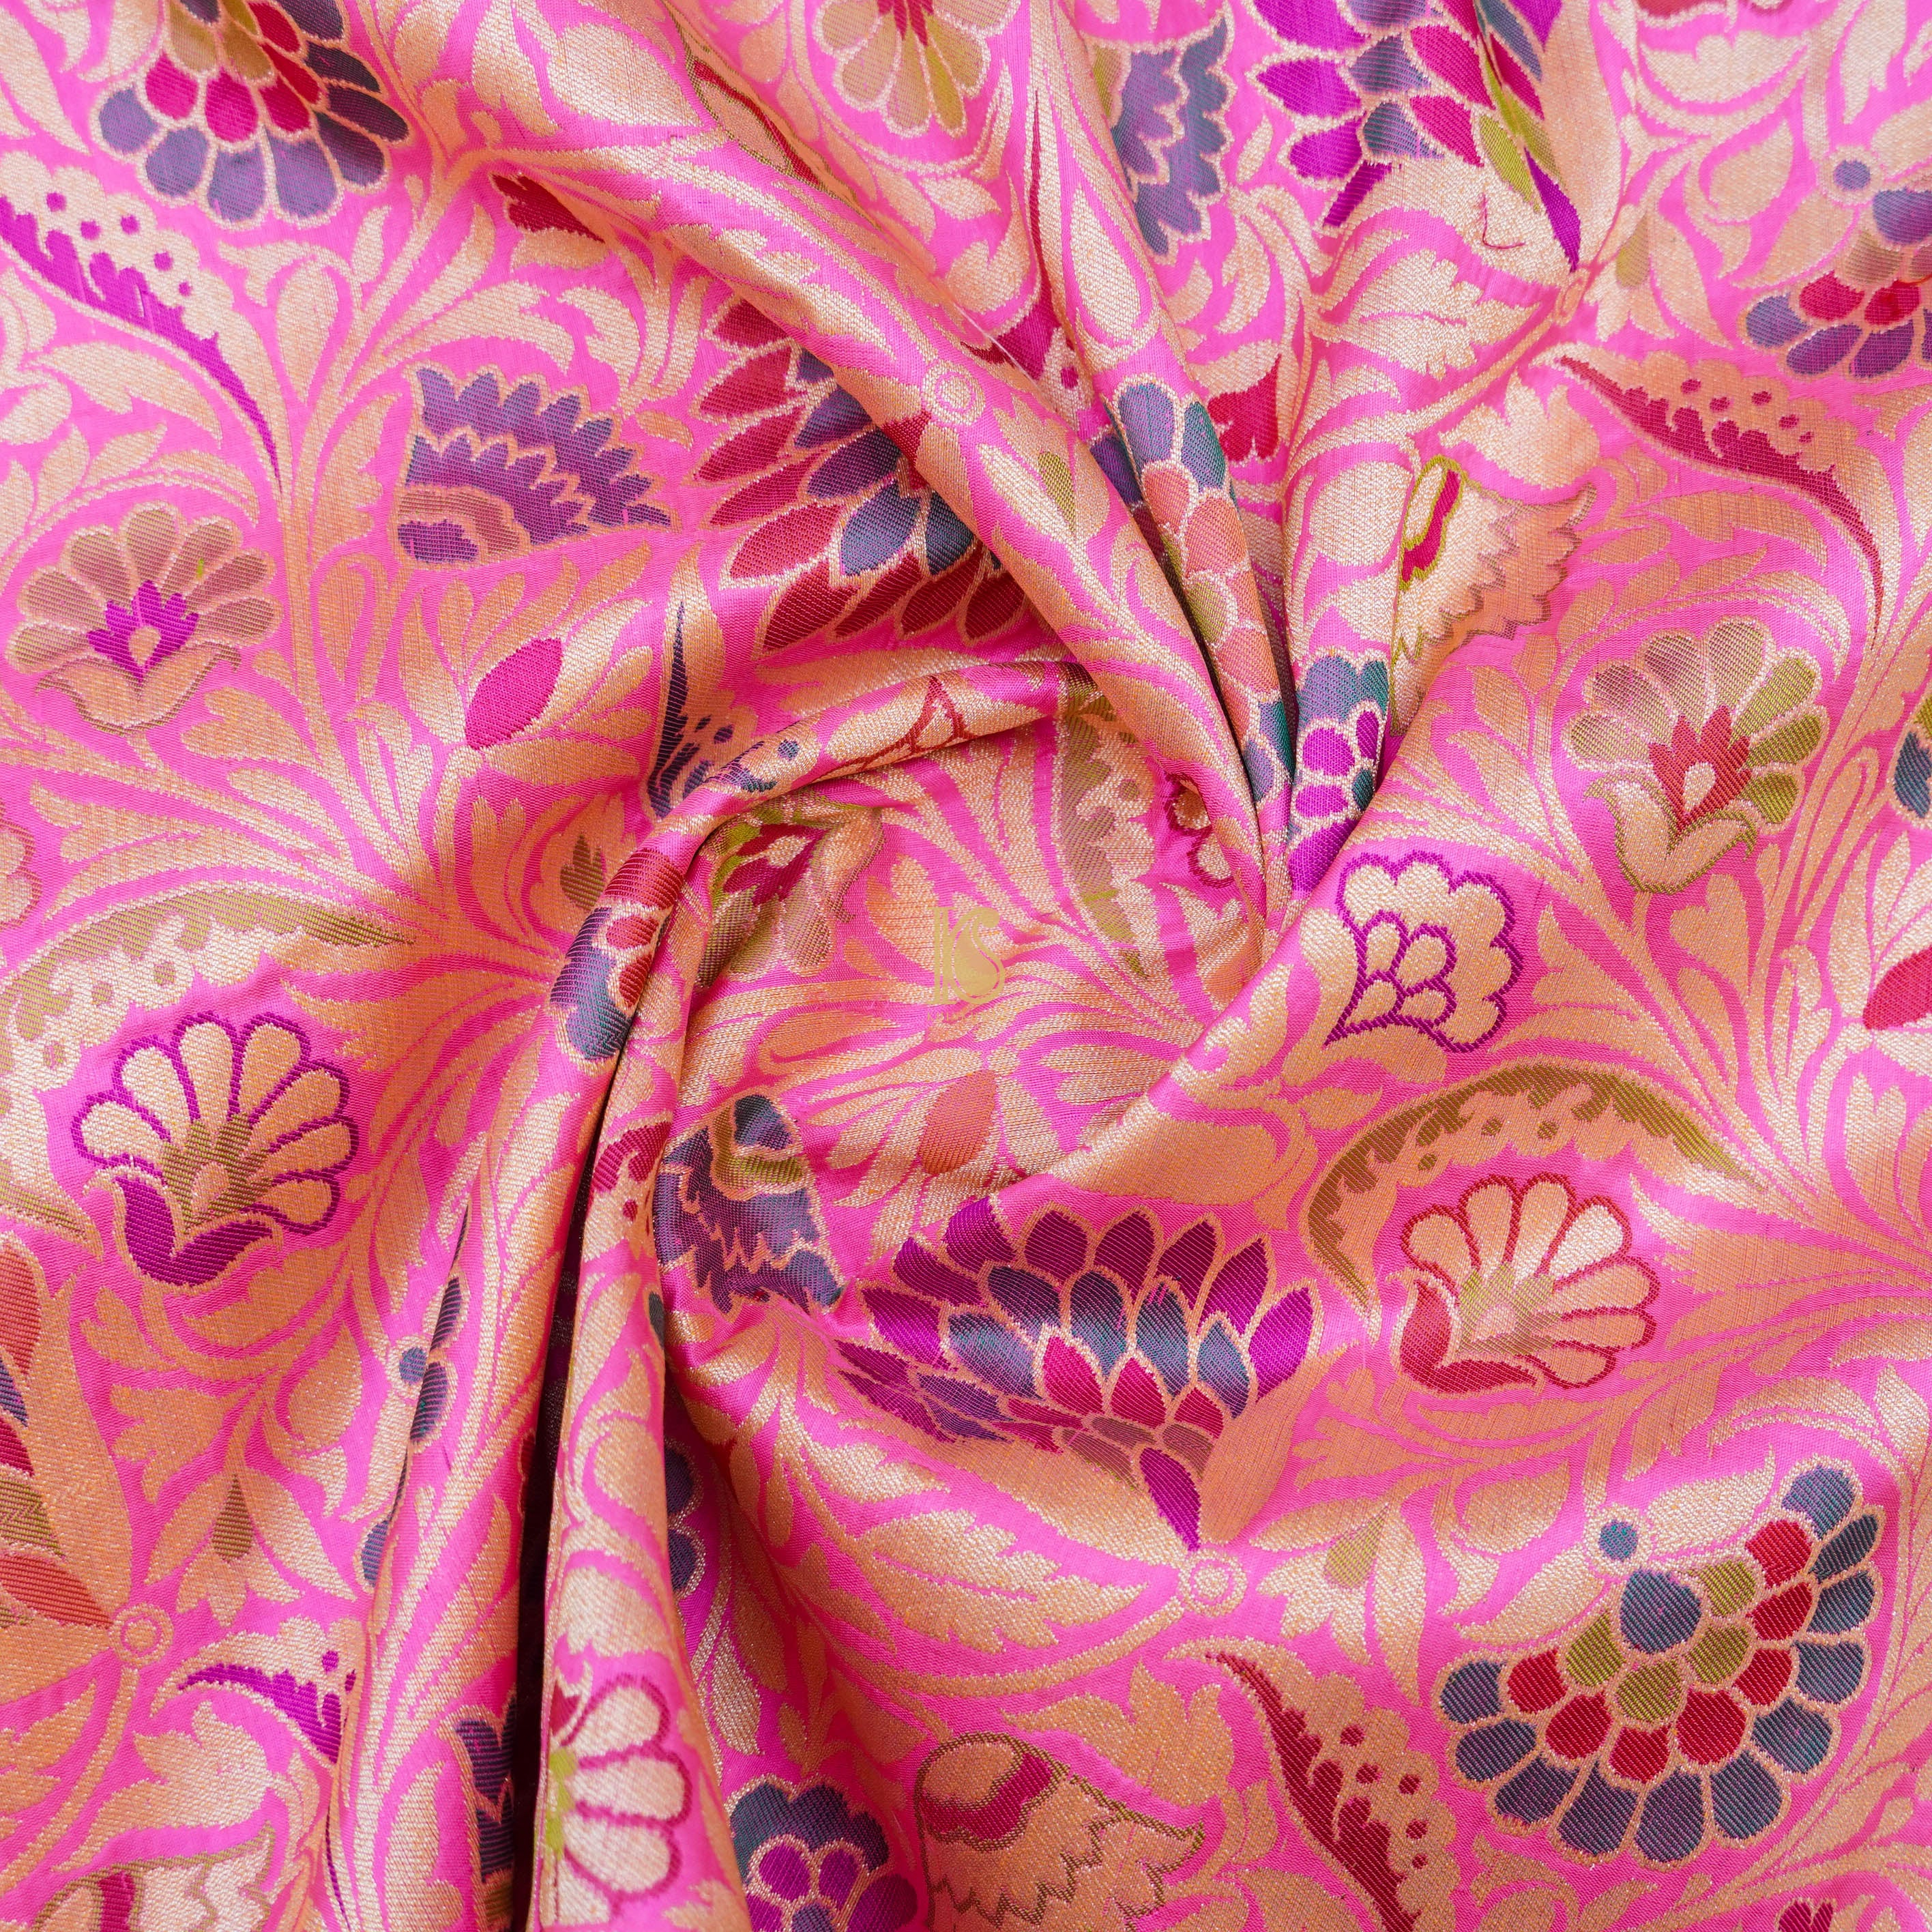 Pink Pure Katan Silk Banarasi Meenakari Fabric - Khinkhwab